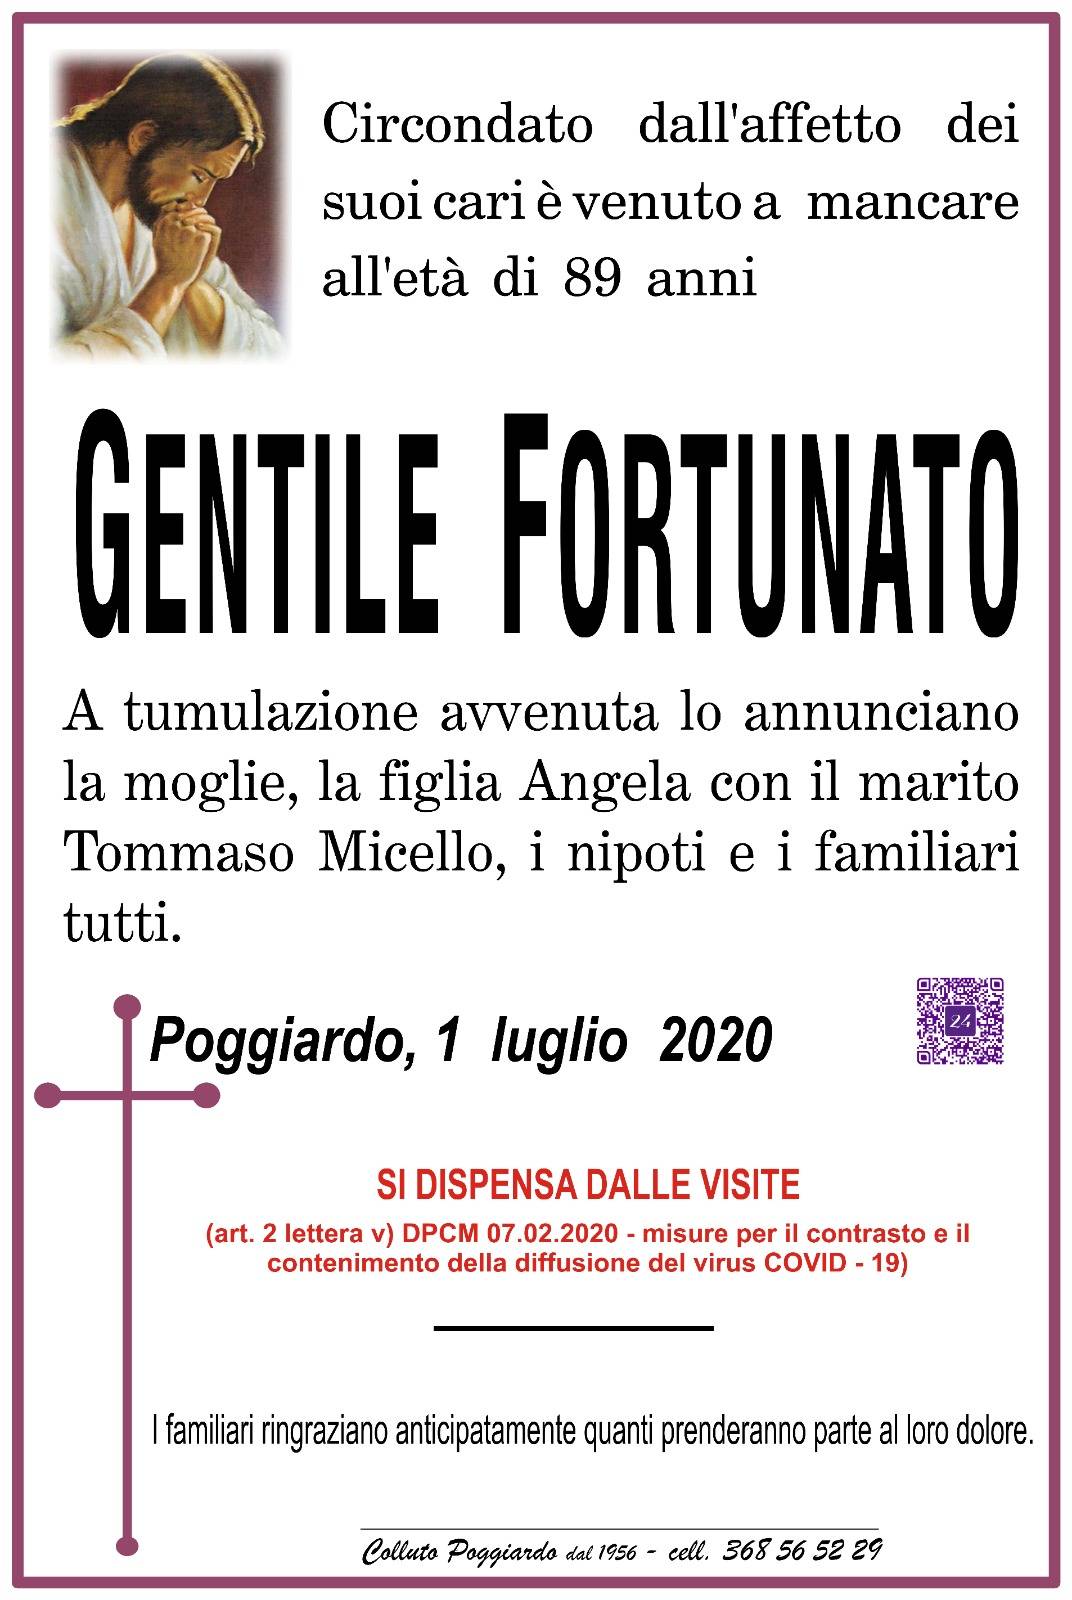 Fortunato Gentile